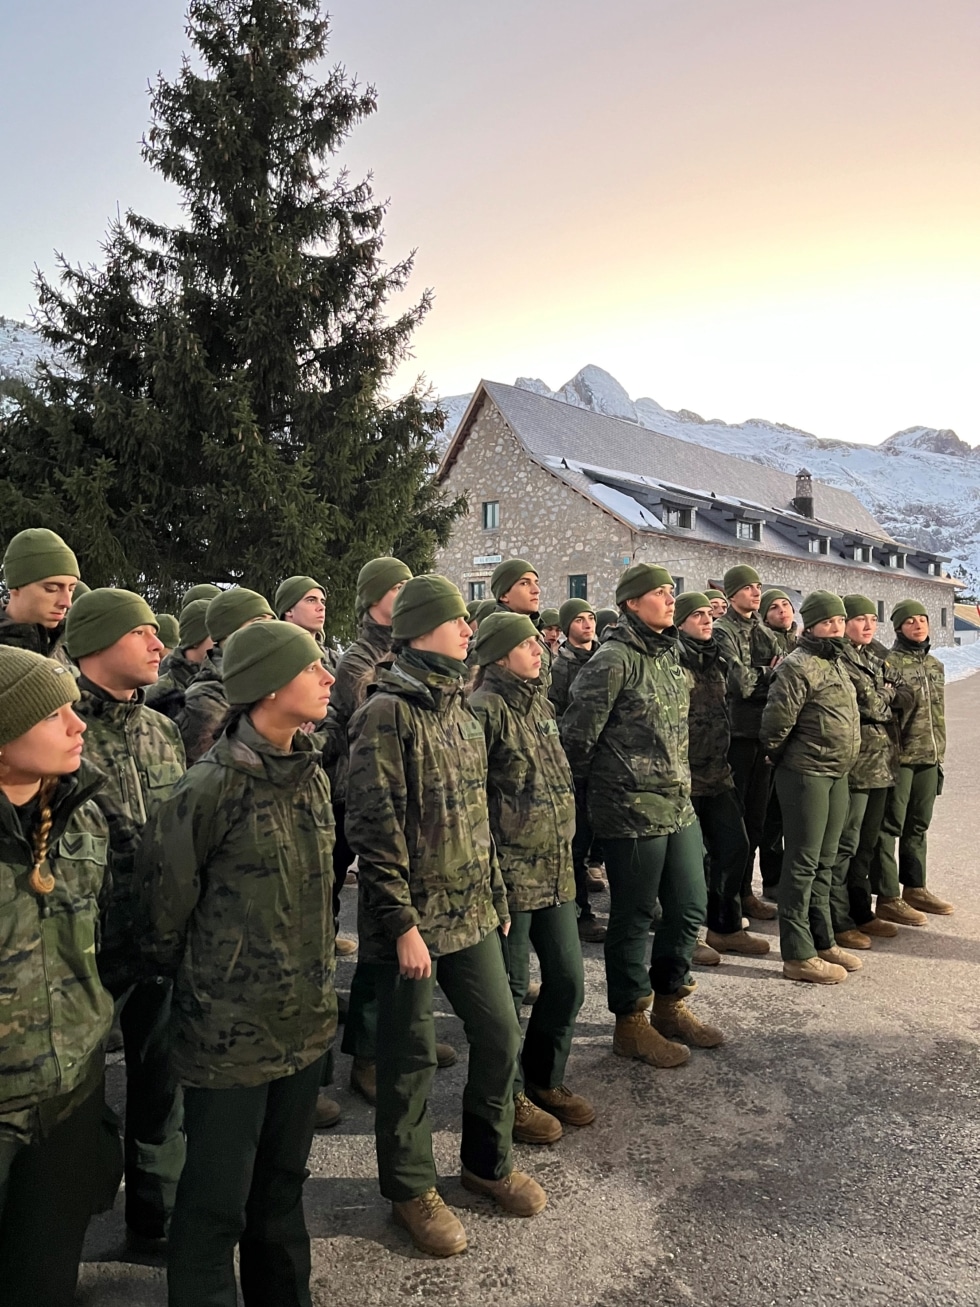 Al amanecer, los cadetes de la Academia General Militar, entre los que estaba Leonor, estaban preparados para comenzar la instrucción.